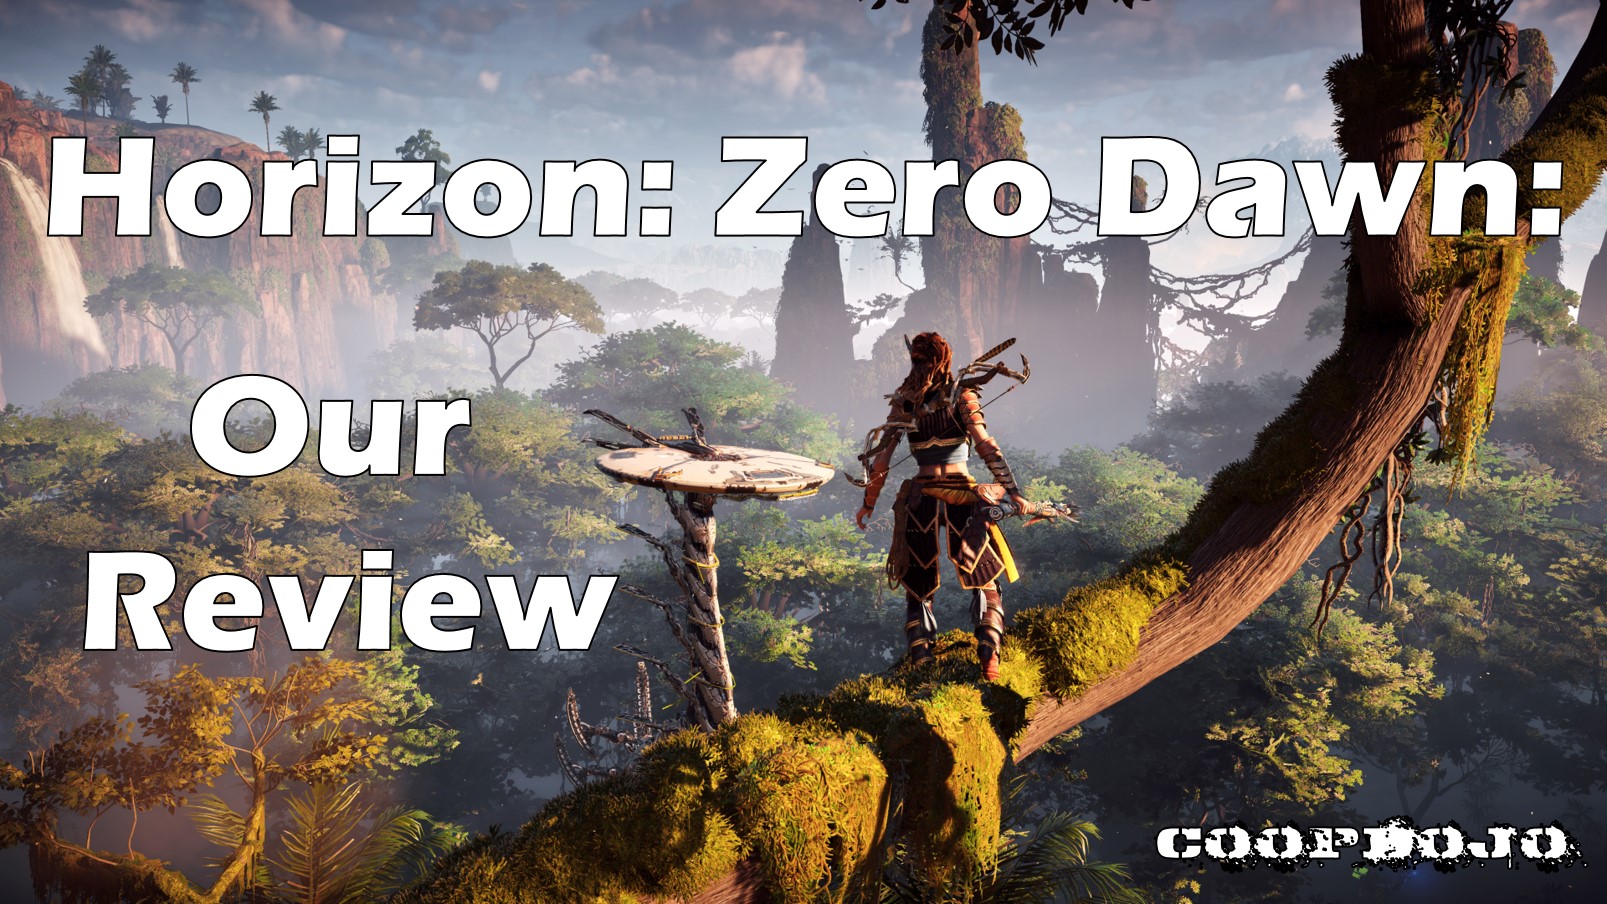 Our Review Of Horizon: Zero Dawn